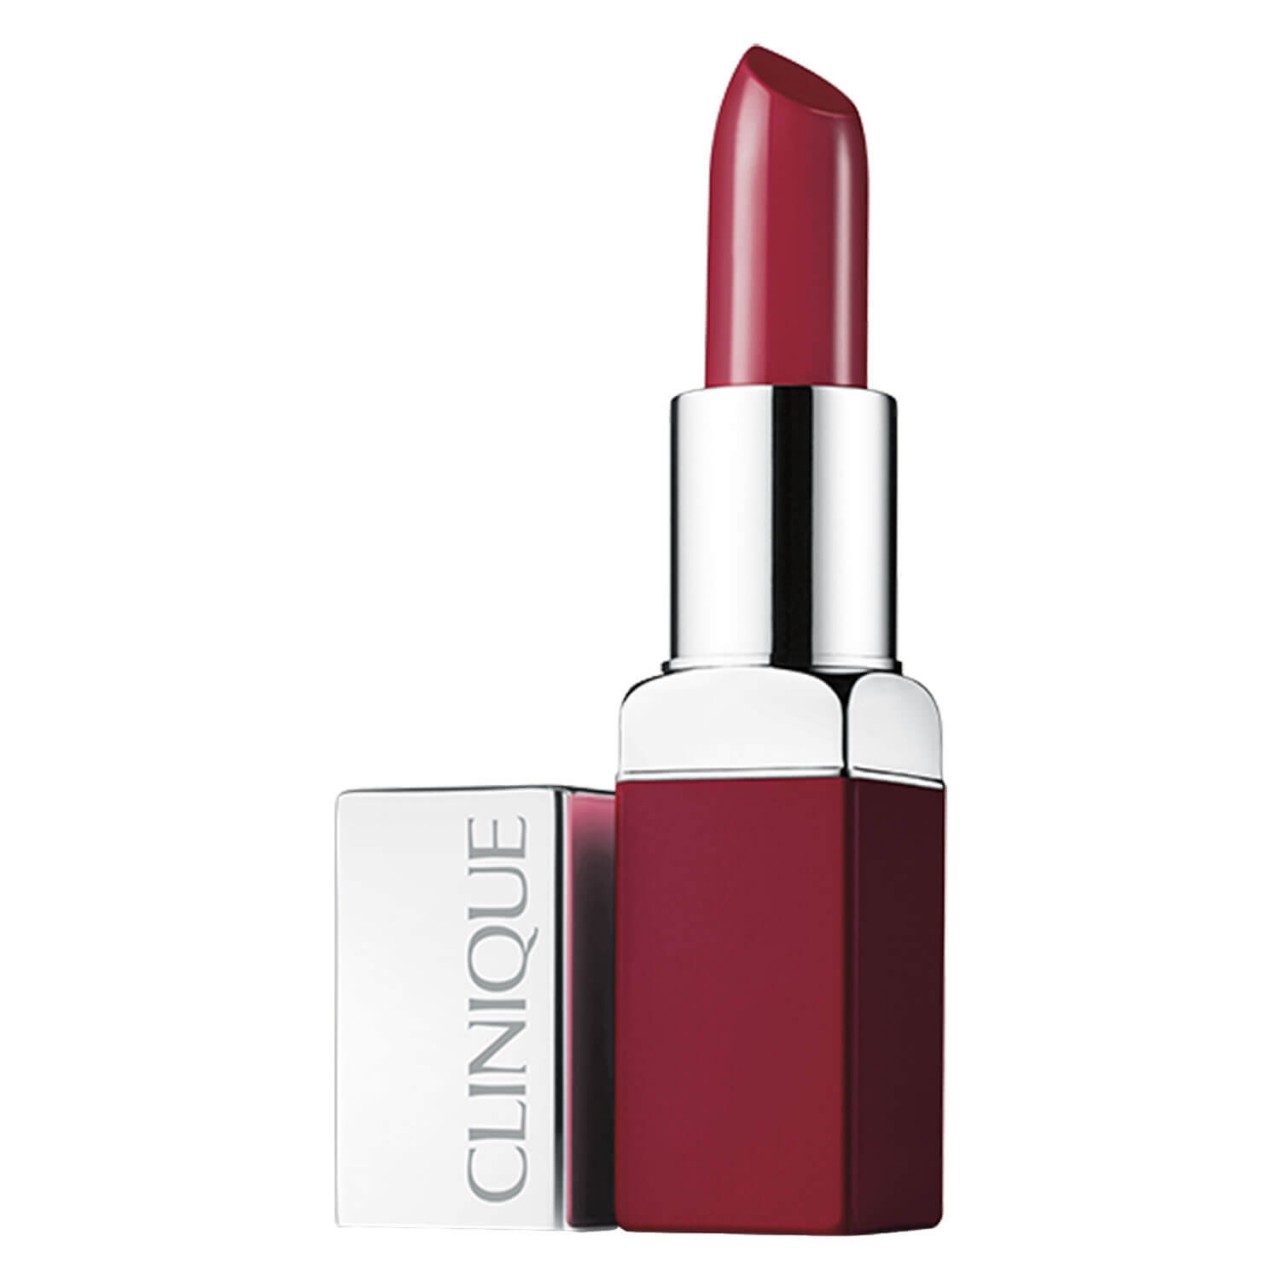 Clinique - Clinique Pop™ Lip Colour and Primer - Passion Pop